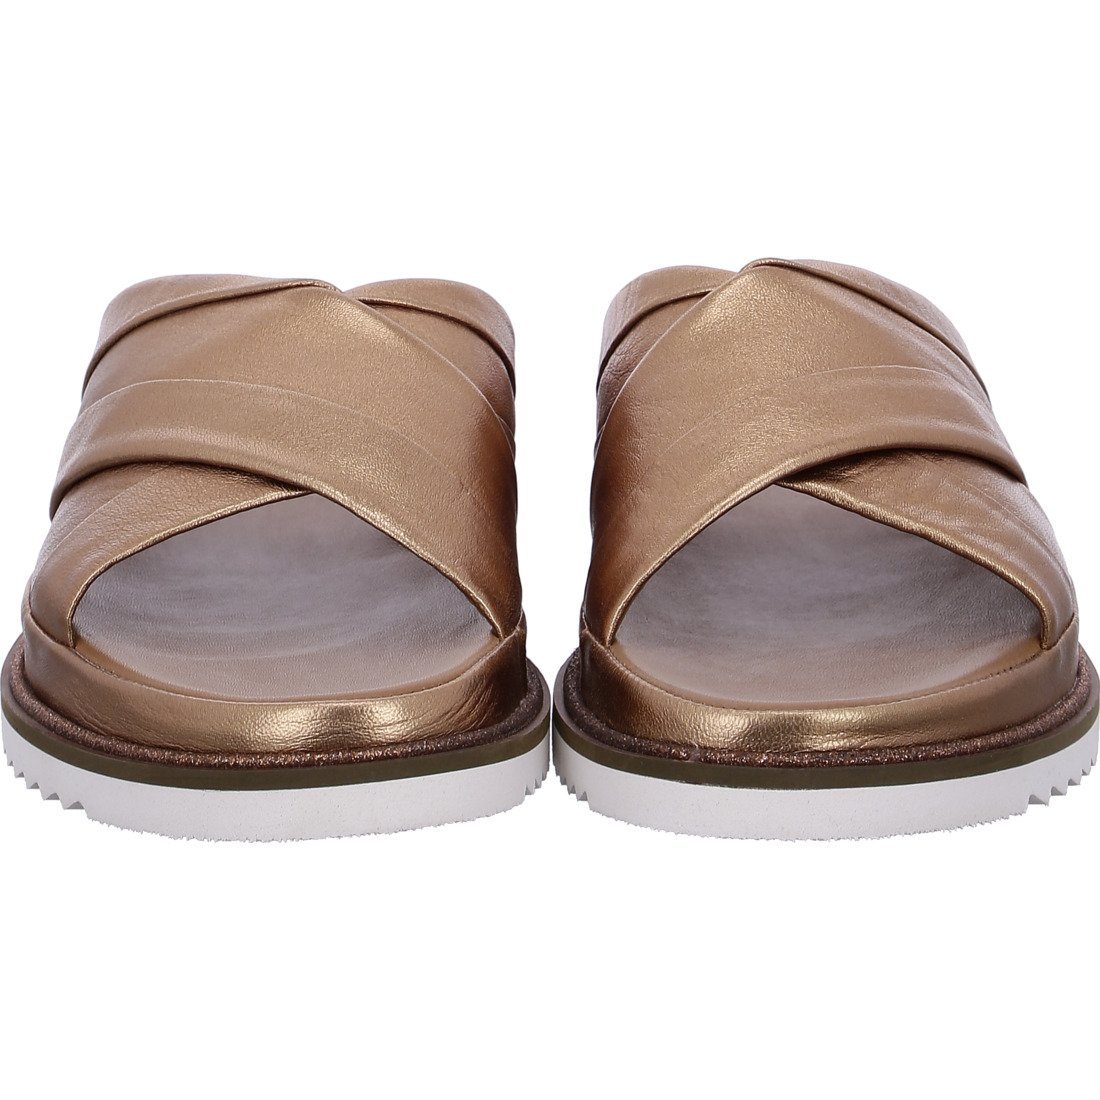 Ara Ara Schuhe, Pantolette Dubai Damen braun - 044843 Glattleder Pantolette